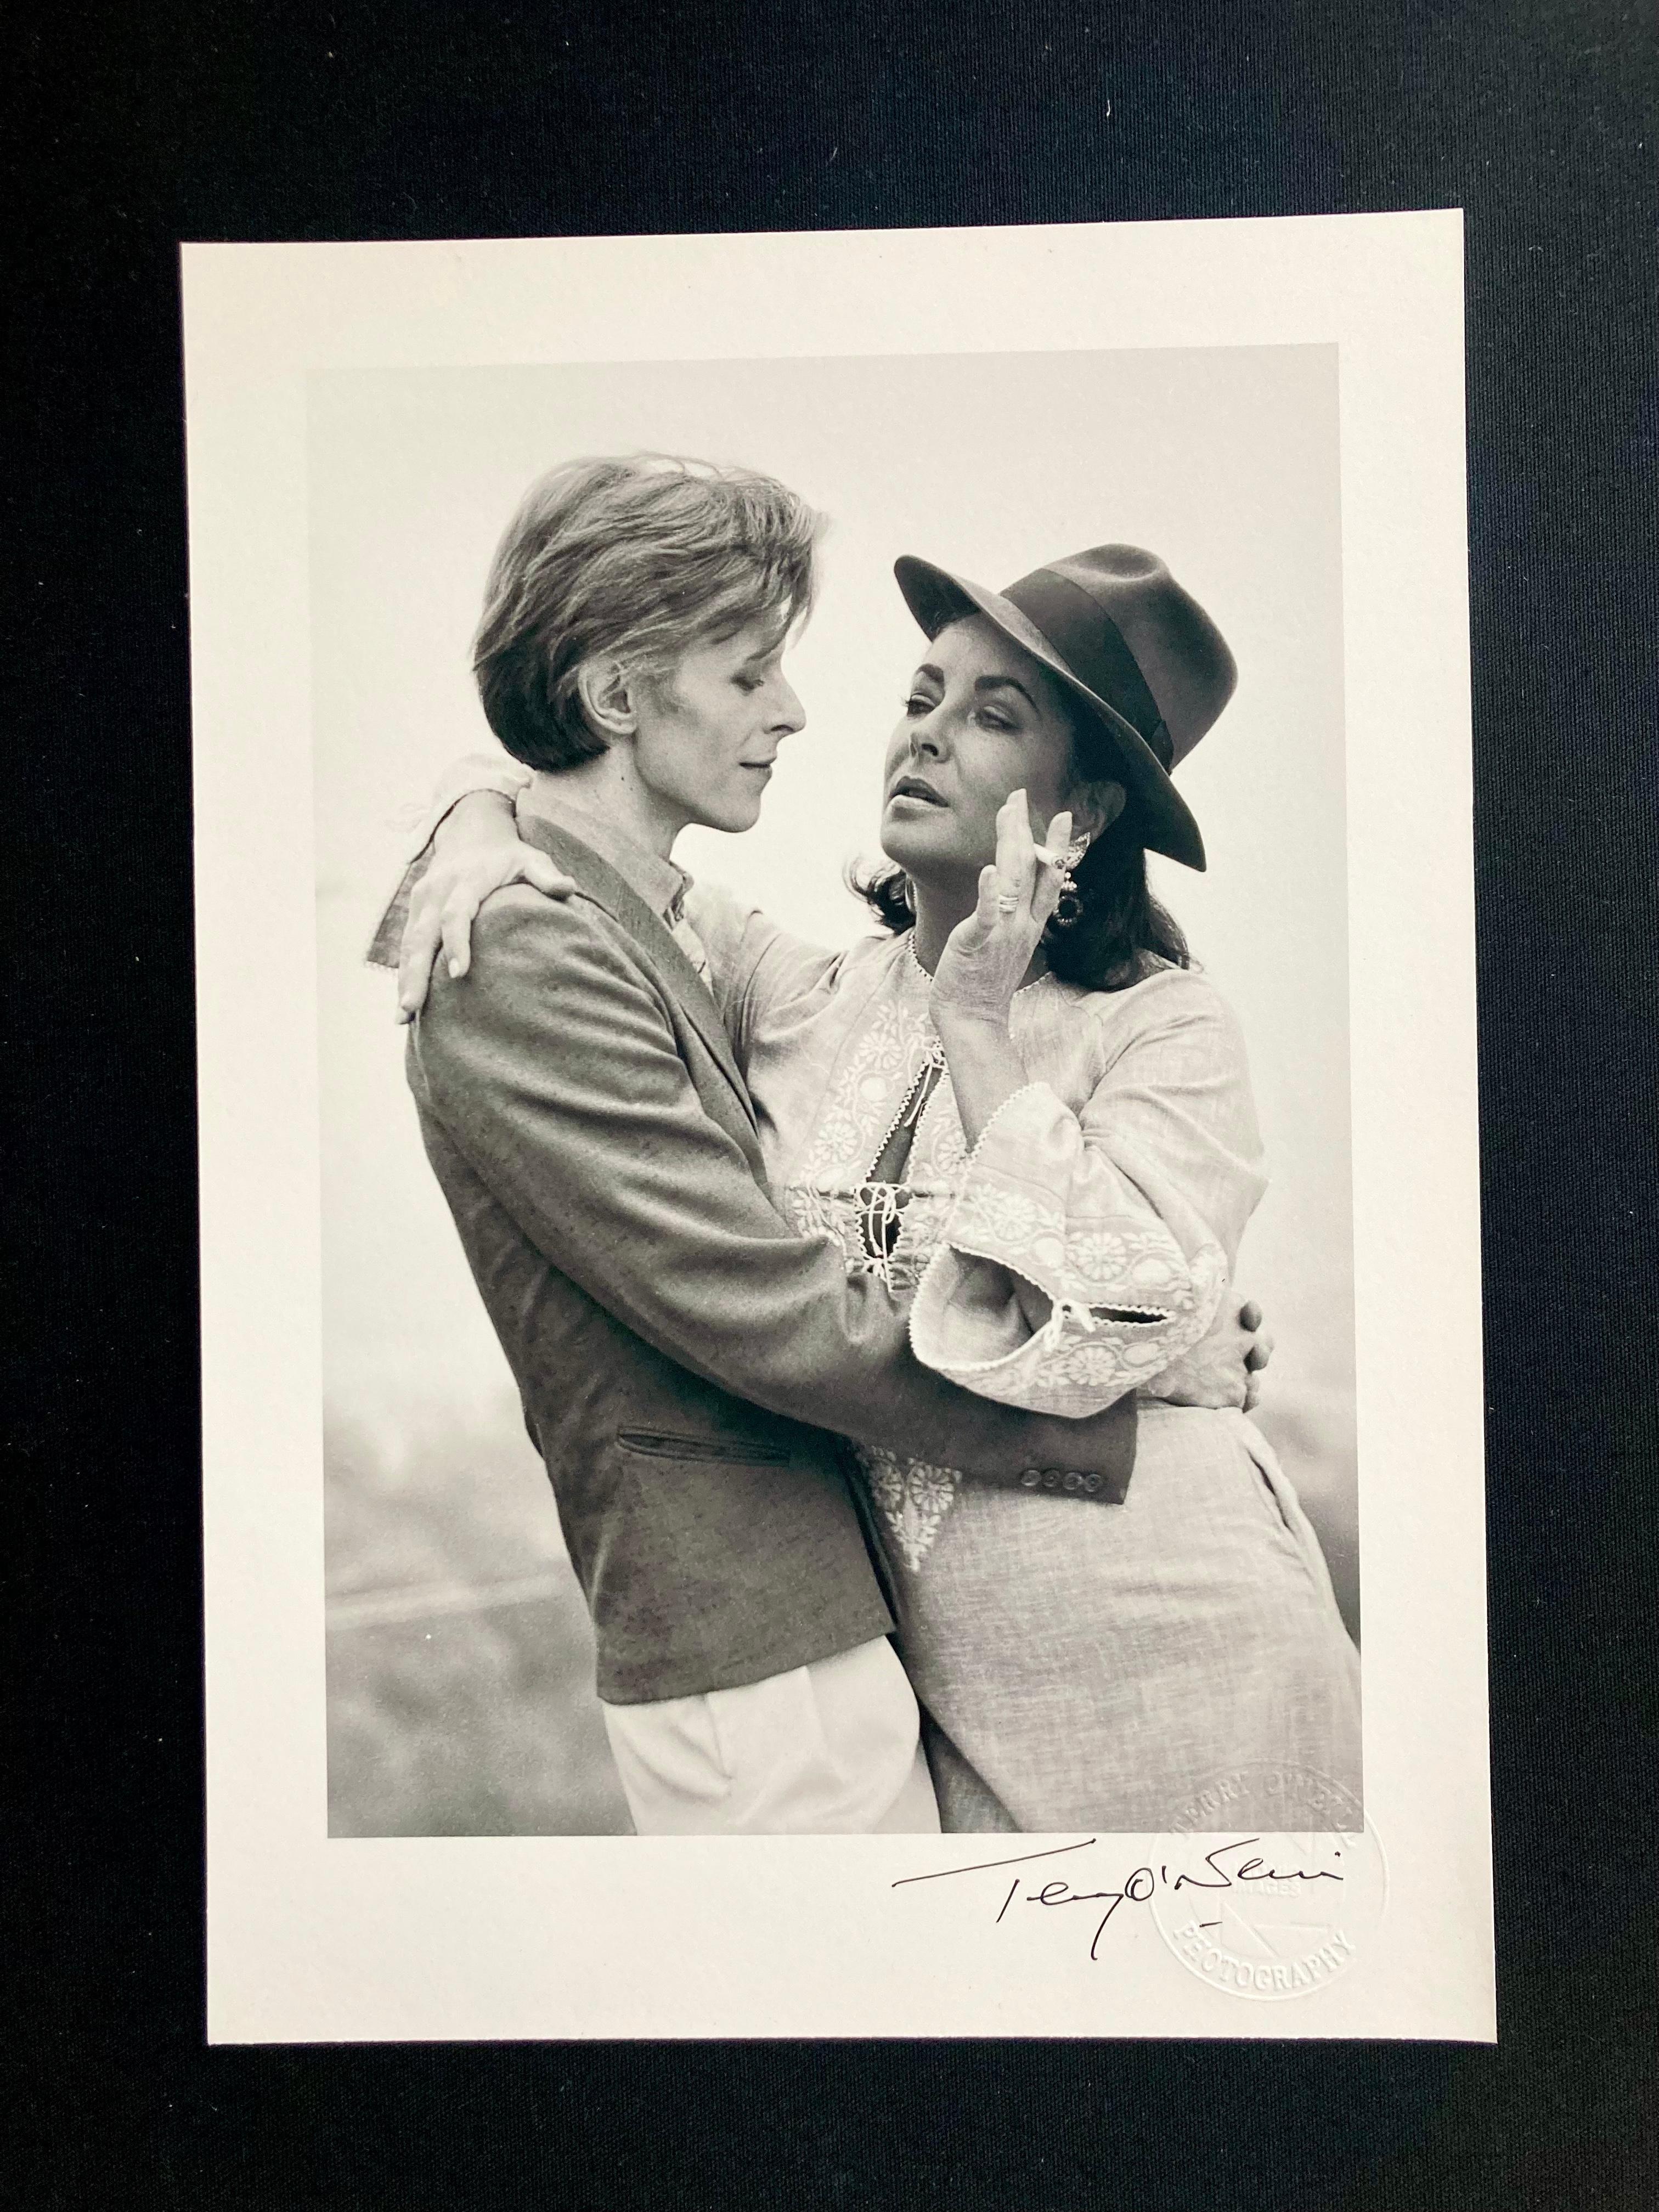 Signierter, 8" x 10" großer Archivdruck von David Bowie und Elizabeth Taylor in offener Auflage von Terry O'Neill, mit Terry O'Neills offiziellem, geprägtem Studiostempel.

David Bowie und die Schauspielerin Elizabeth Taylor treffen sich zum ersten